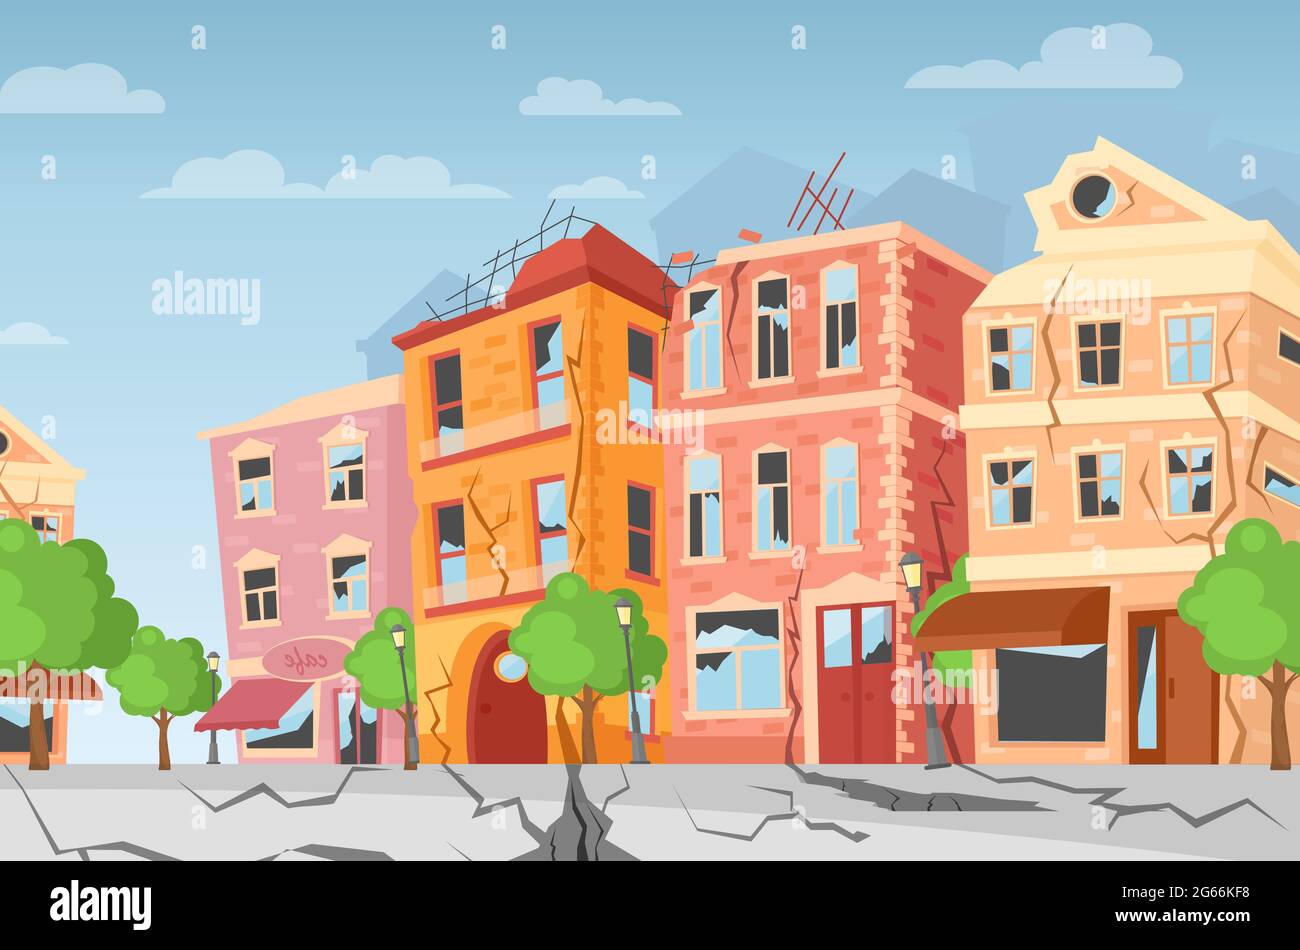 Illustrazione vettoriale del terremoto in città, crepacci di terra. Cartoon case colorate con crepe e danni. Concetto di disastro naturale, cataclisma Illustrazione Vettoriale